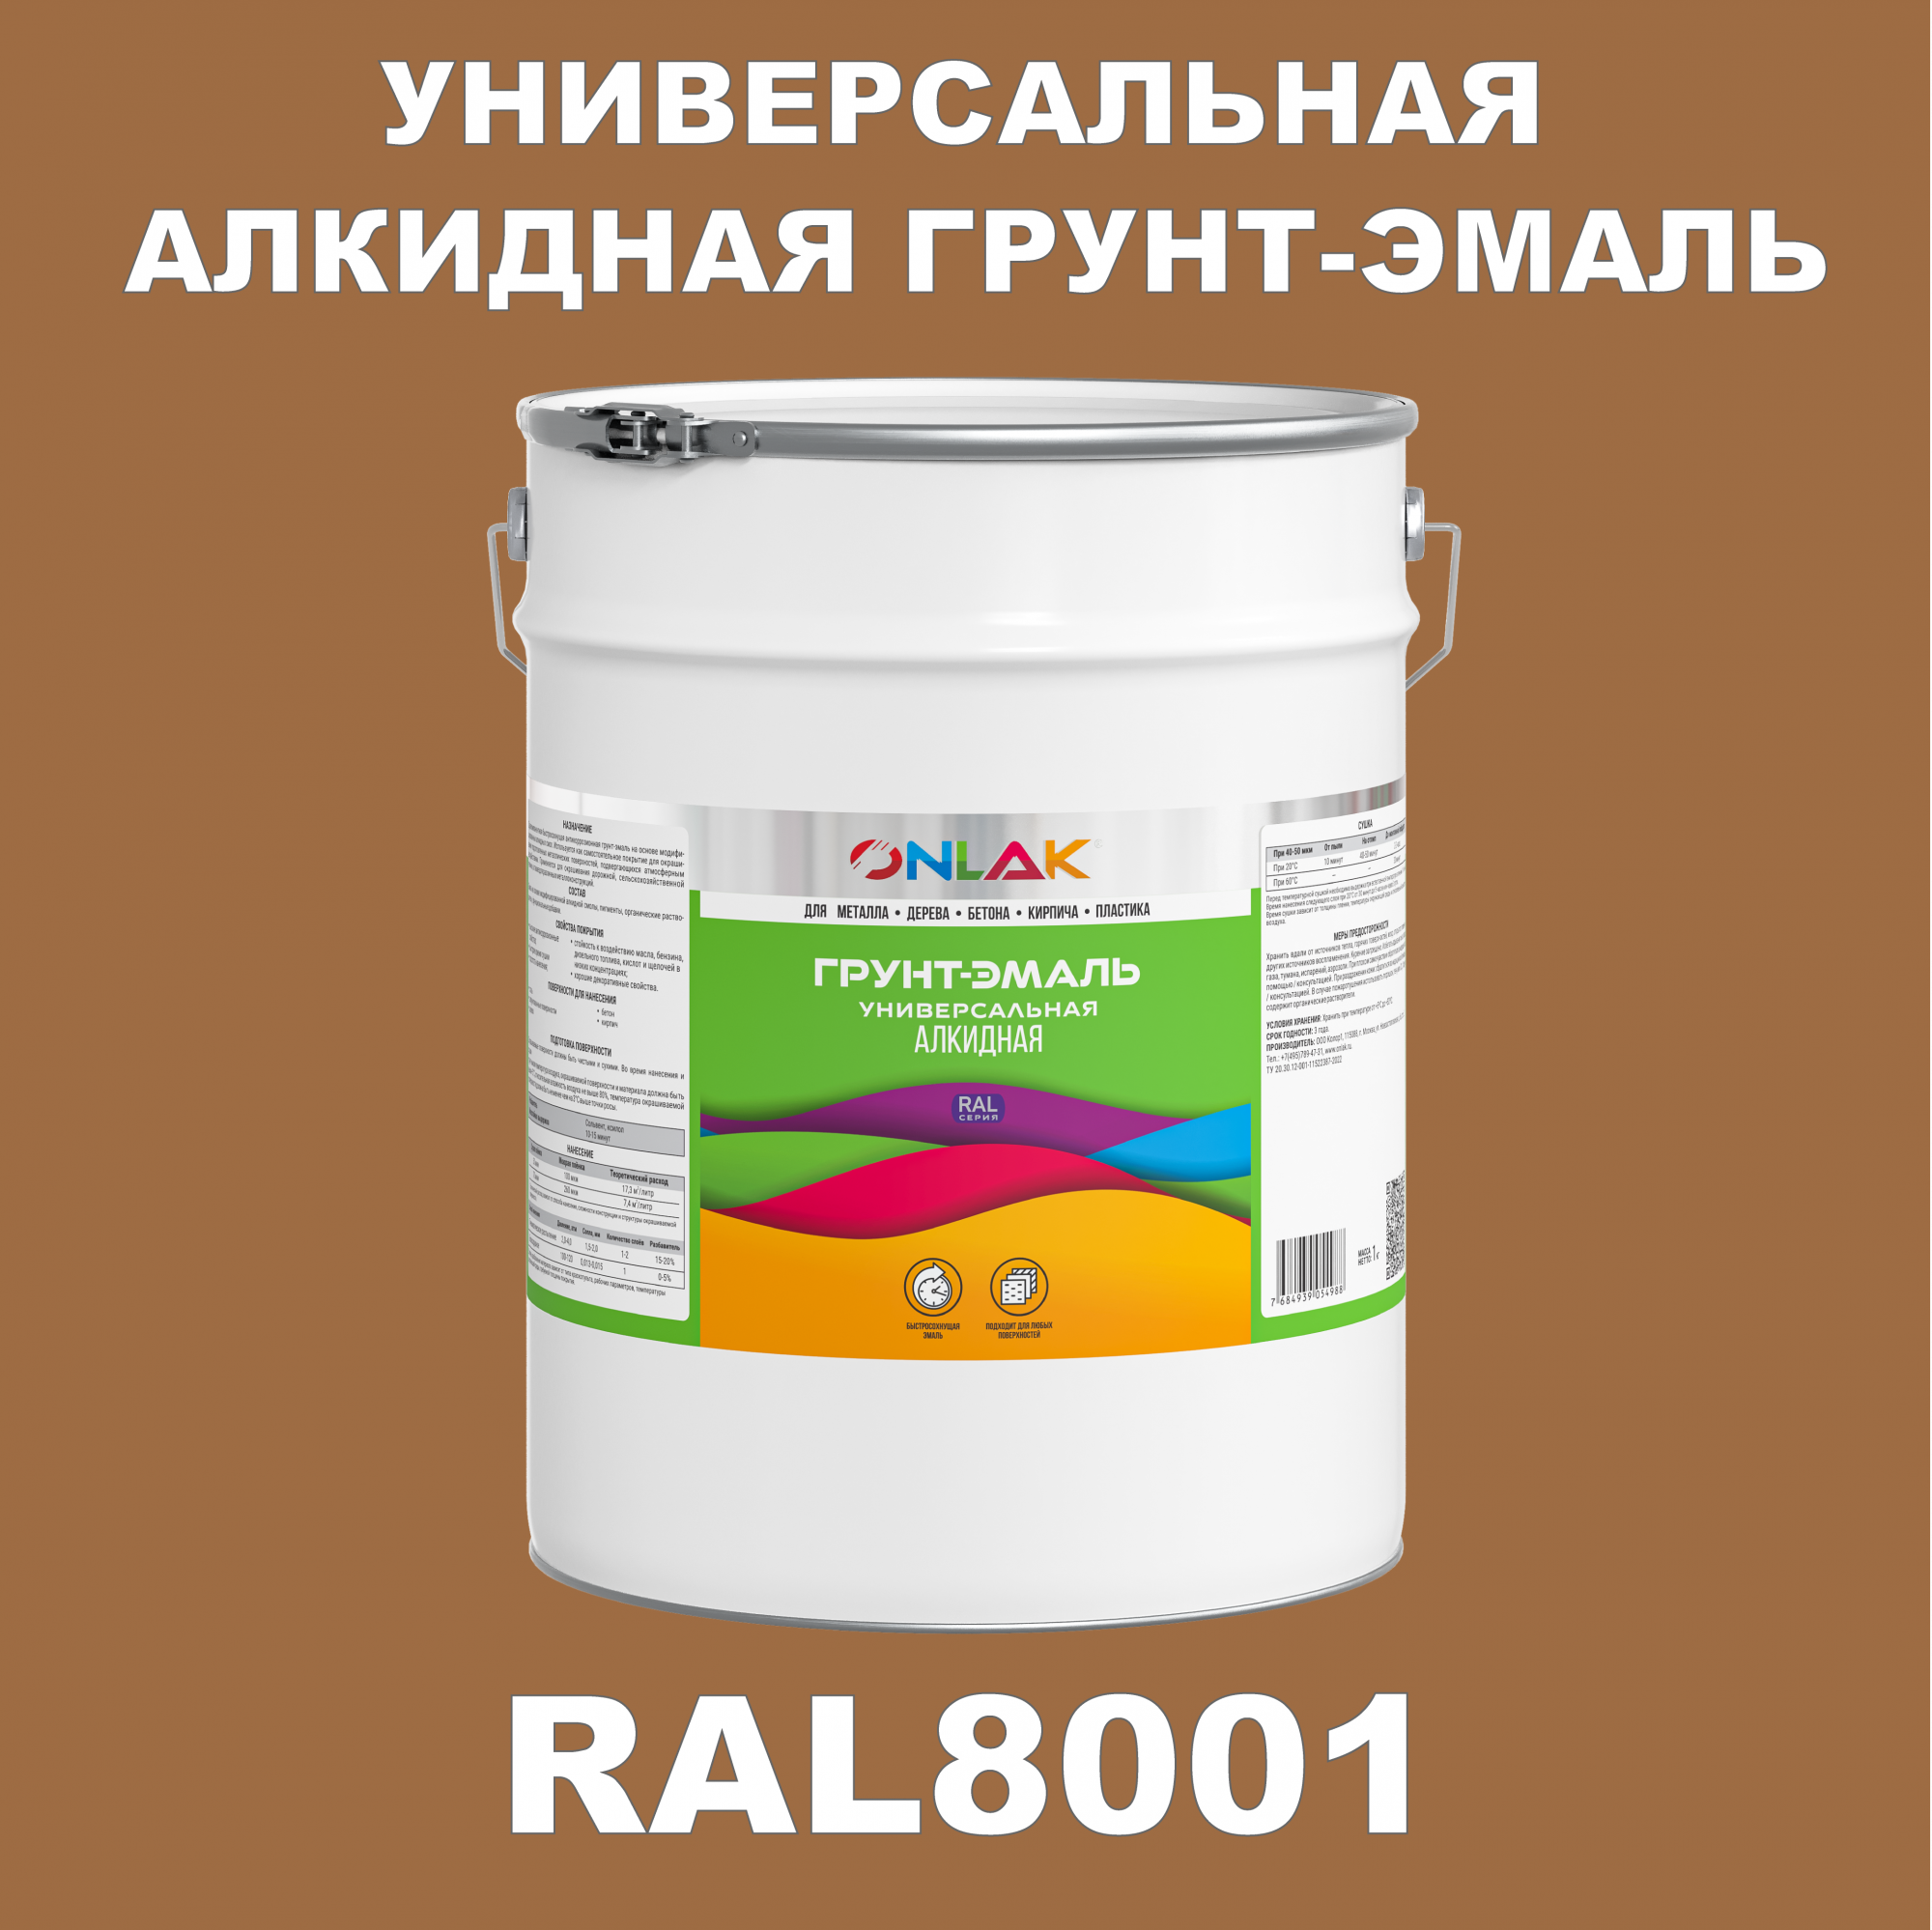 Грунт-эмаль ONLAK 1К RAL8001 антикоррозионная алкидная по металлу по ржавчине 20 кг